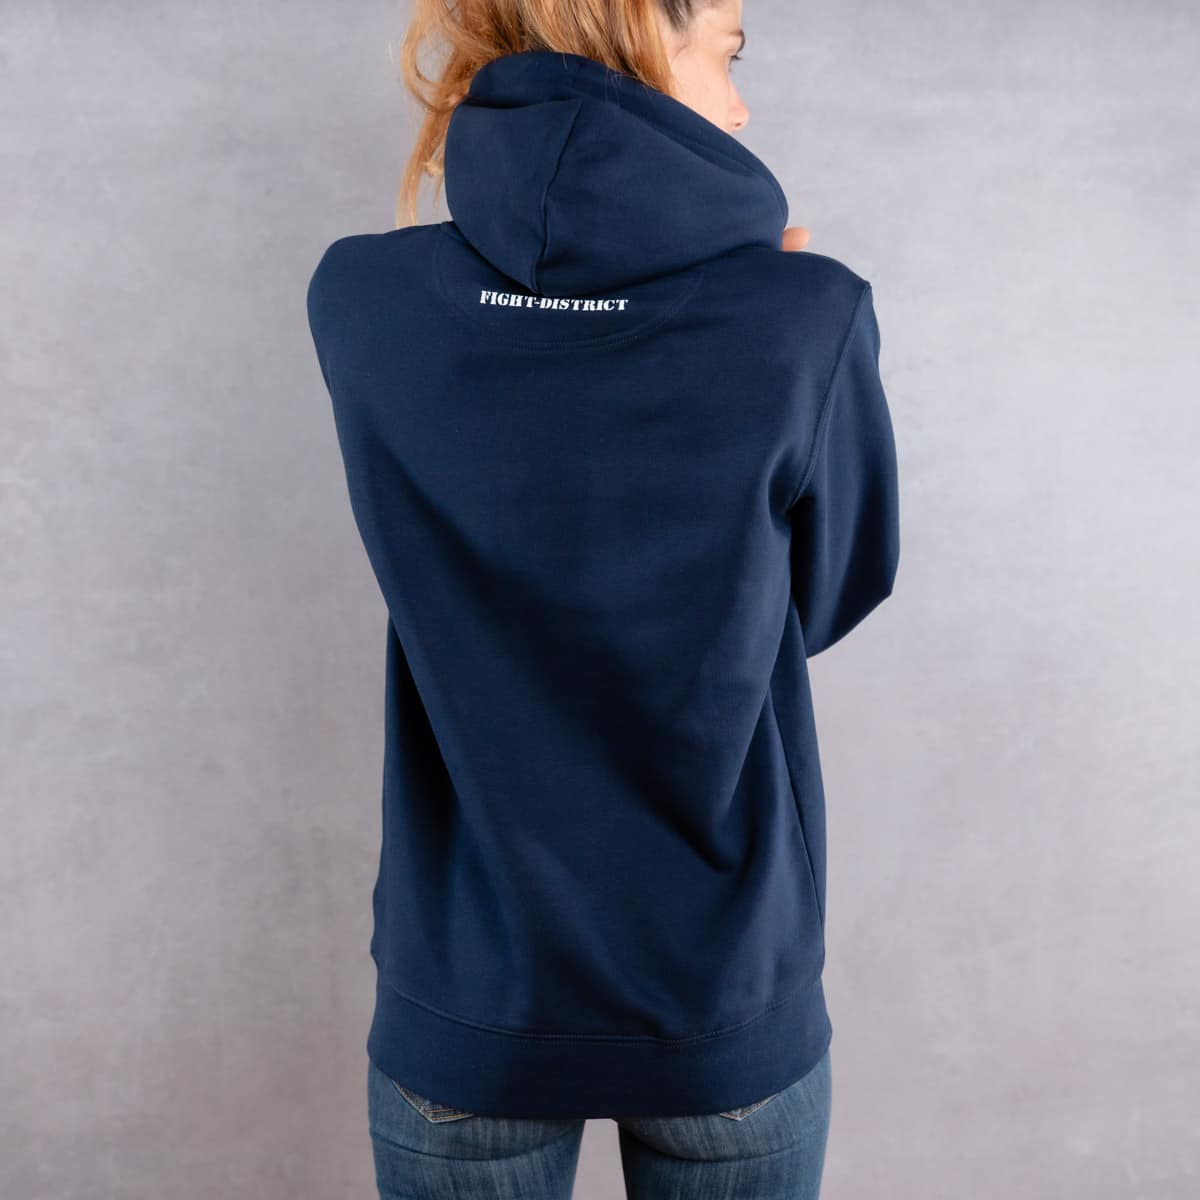 Image de dos d'une femme prenant la pose et portant un hoodie bleu foncé au logo blanc de la collection Laurier